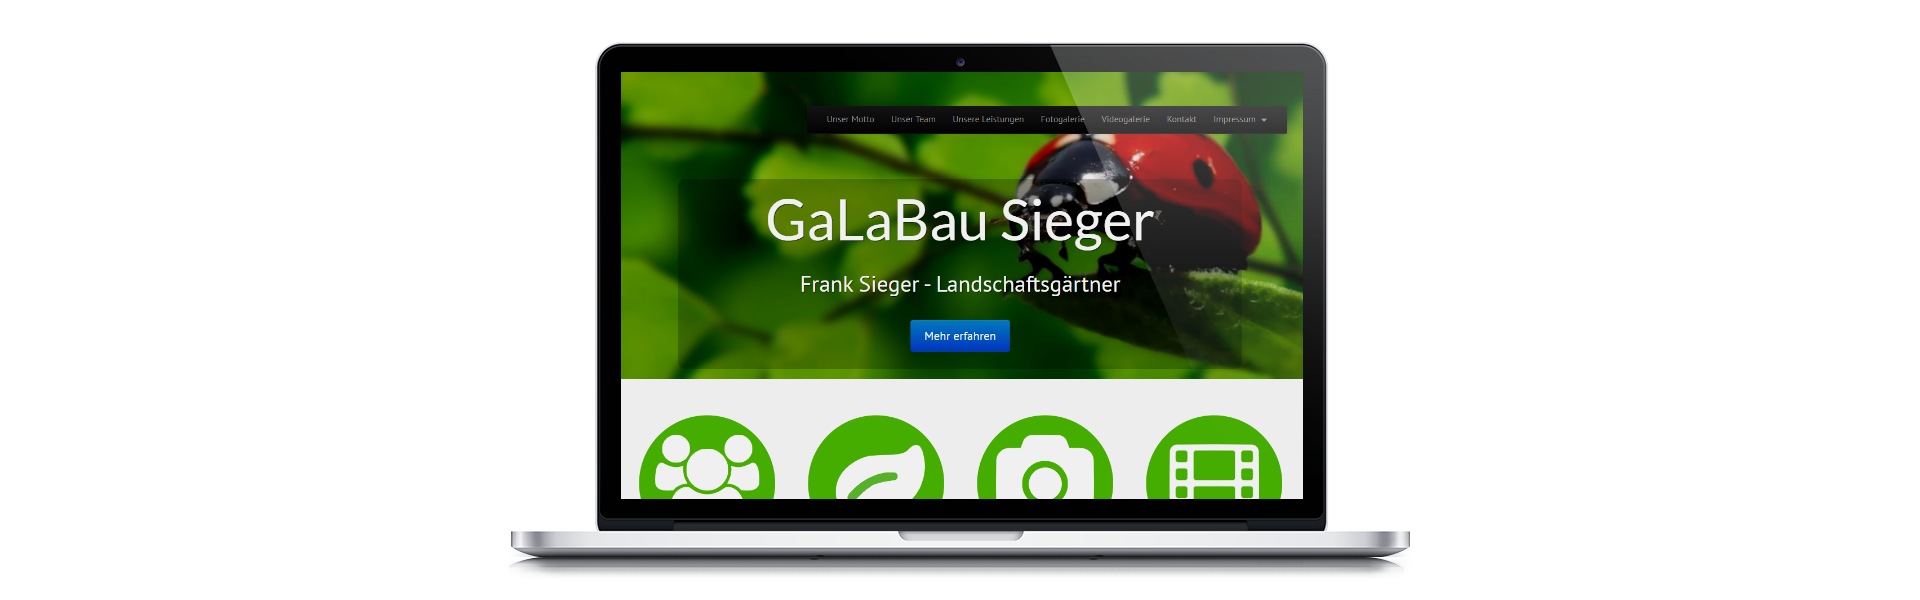 www.galabau-sieger.de